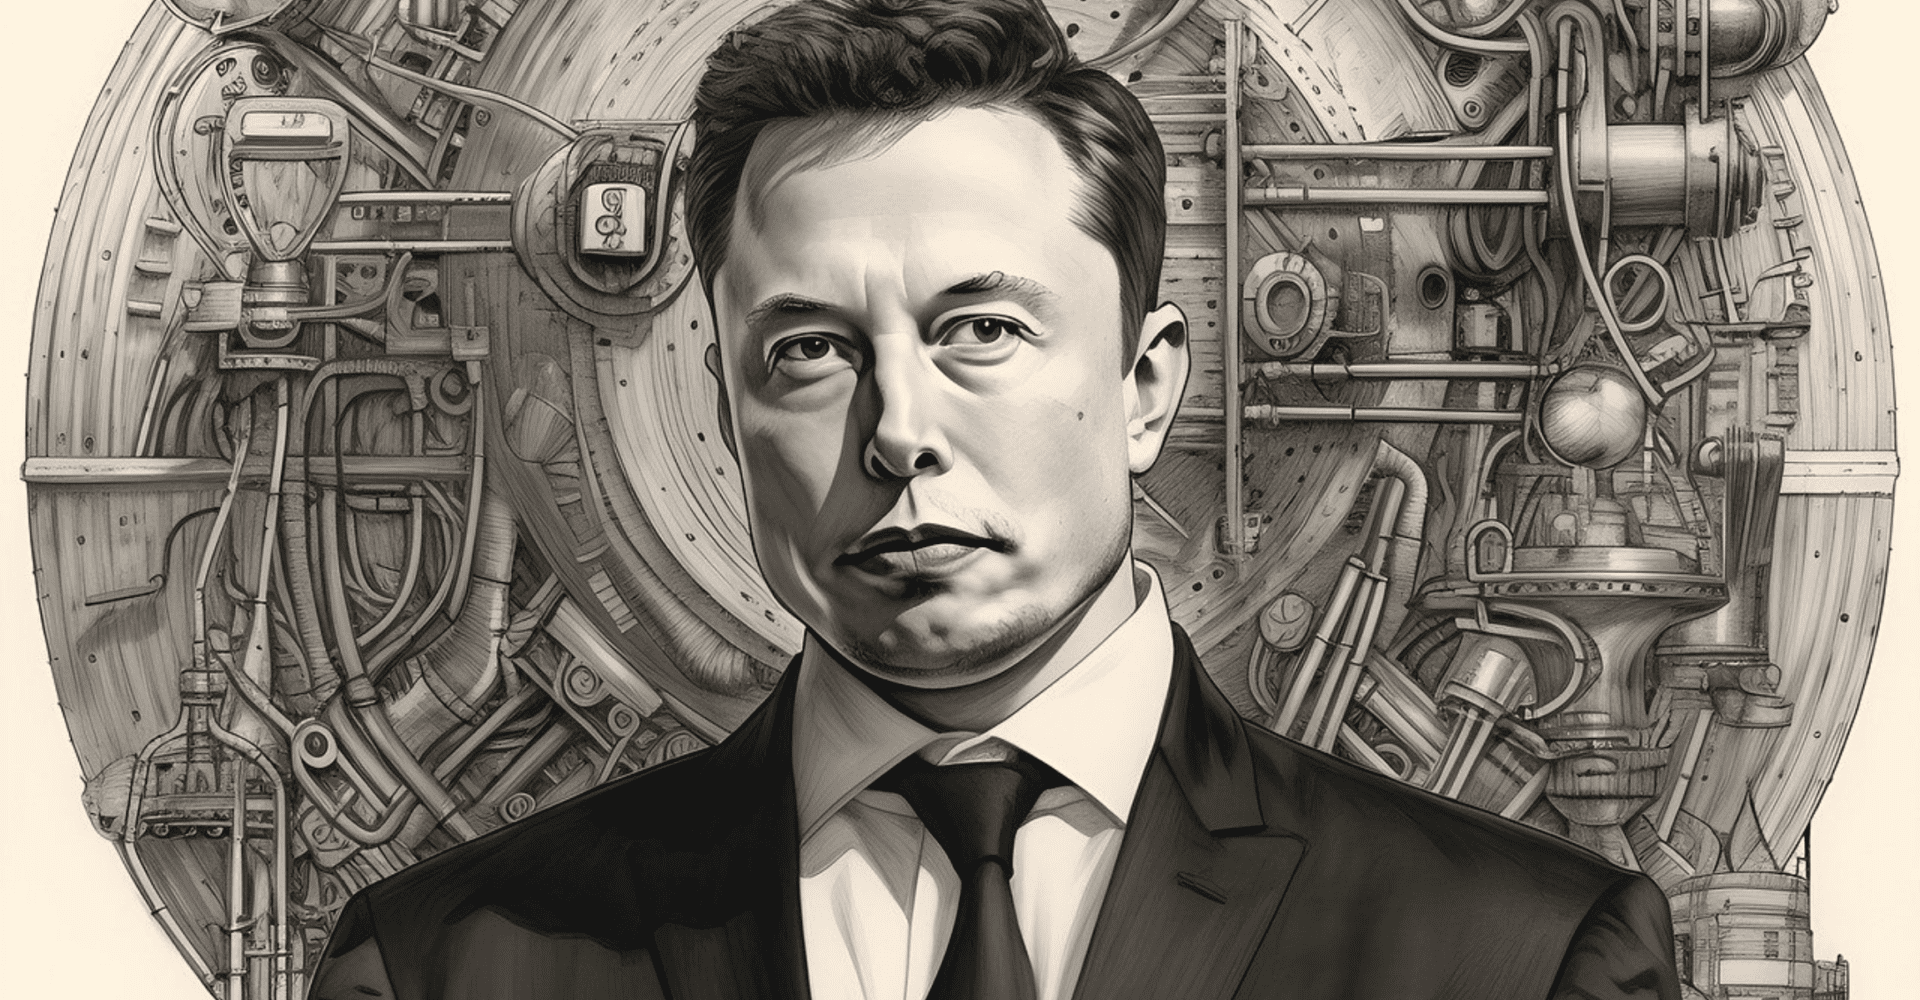 Obraz przedstawiający Elona Muska na tle sejfu.